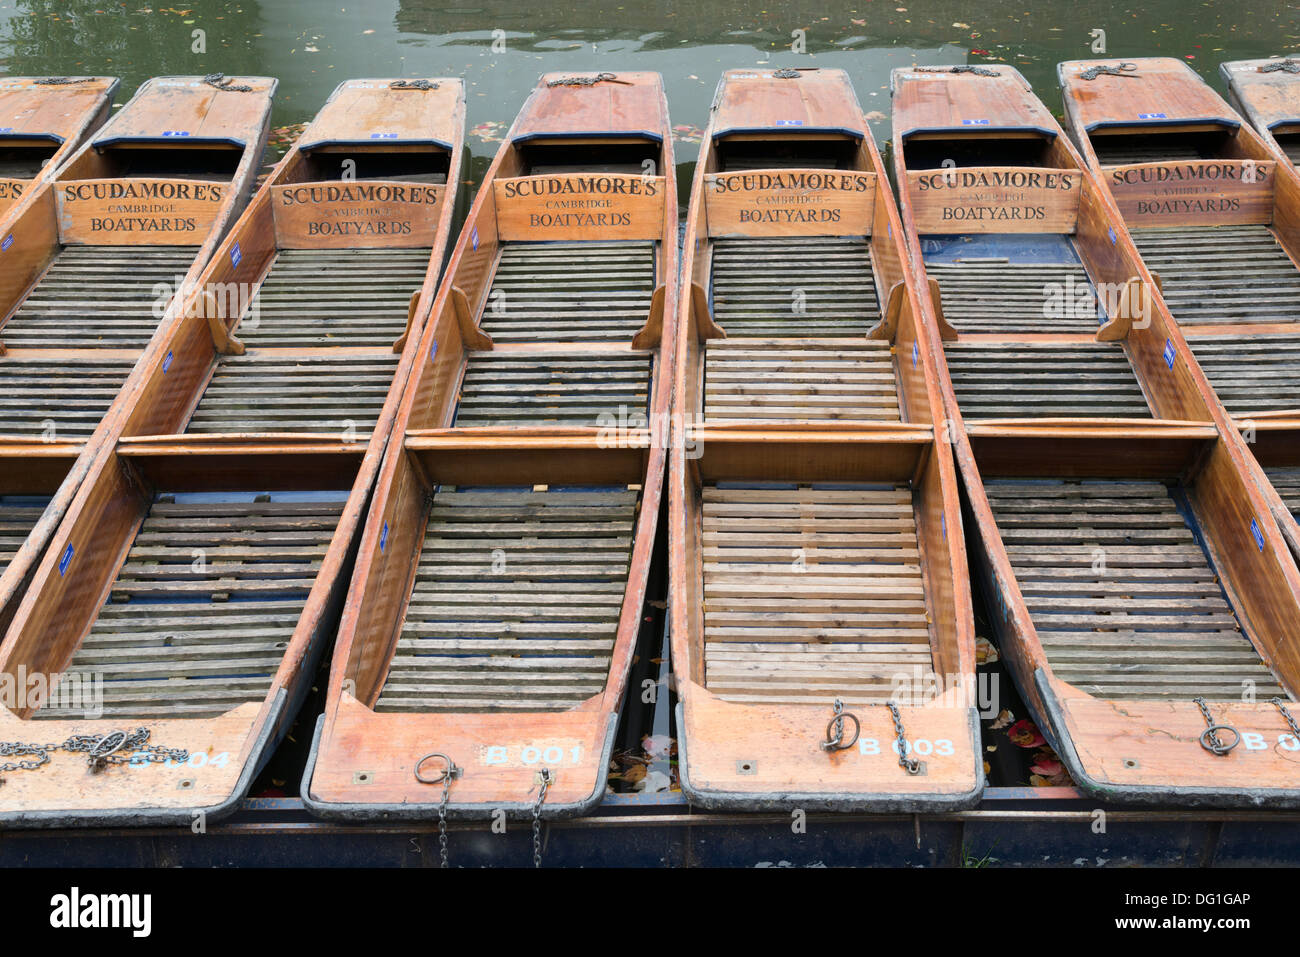 Punts amarrado a los boatyards Scudamore, Quayside, Cambridge, Reino Unido Foto de stock